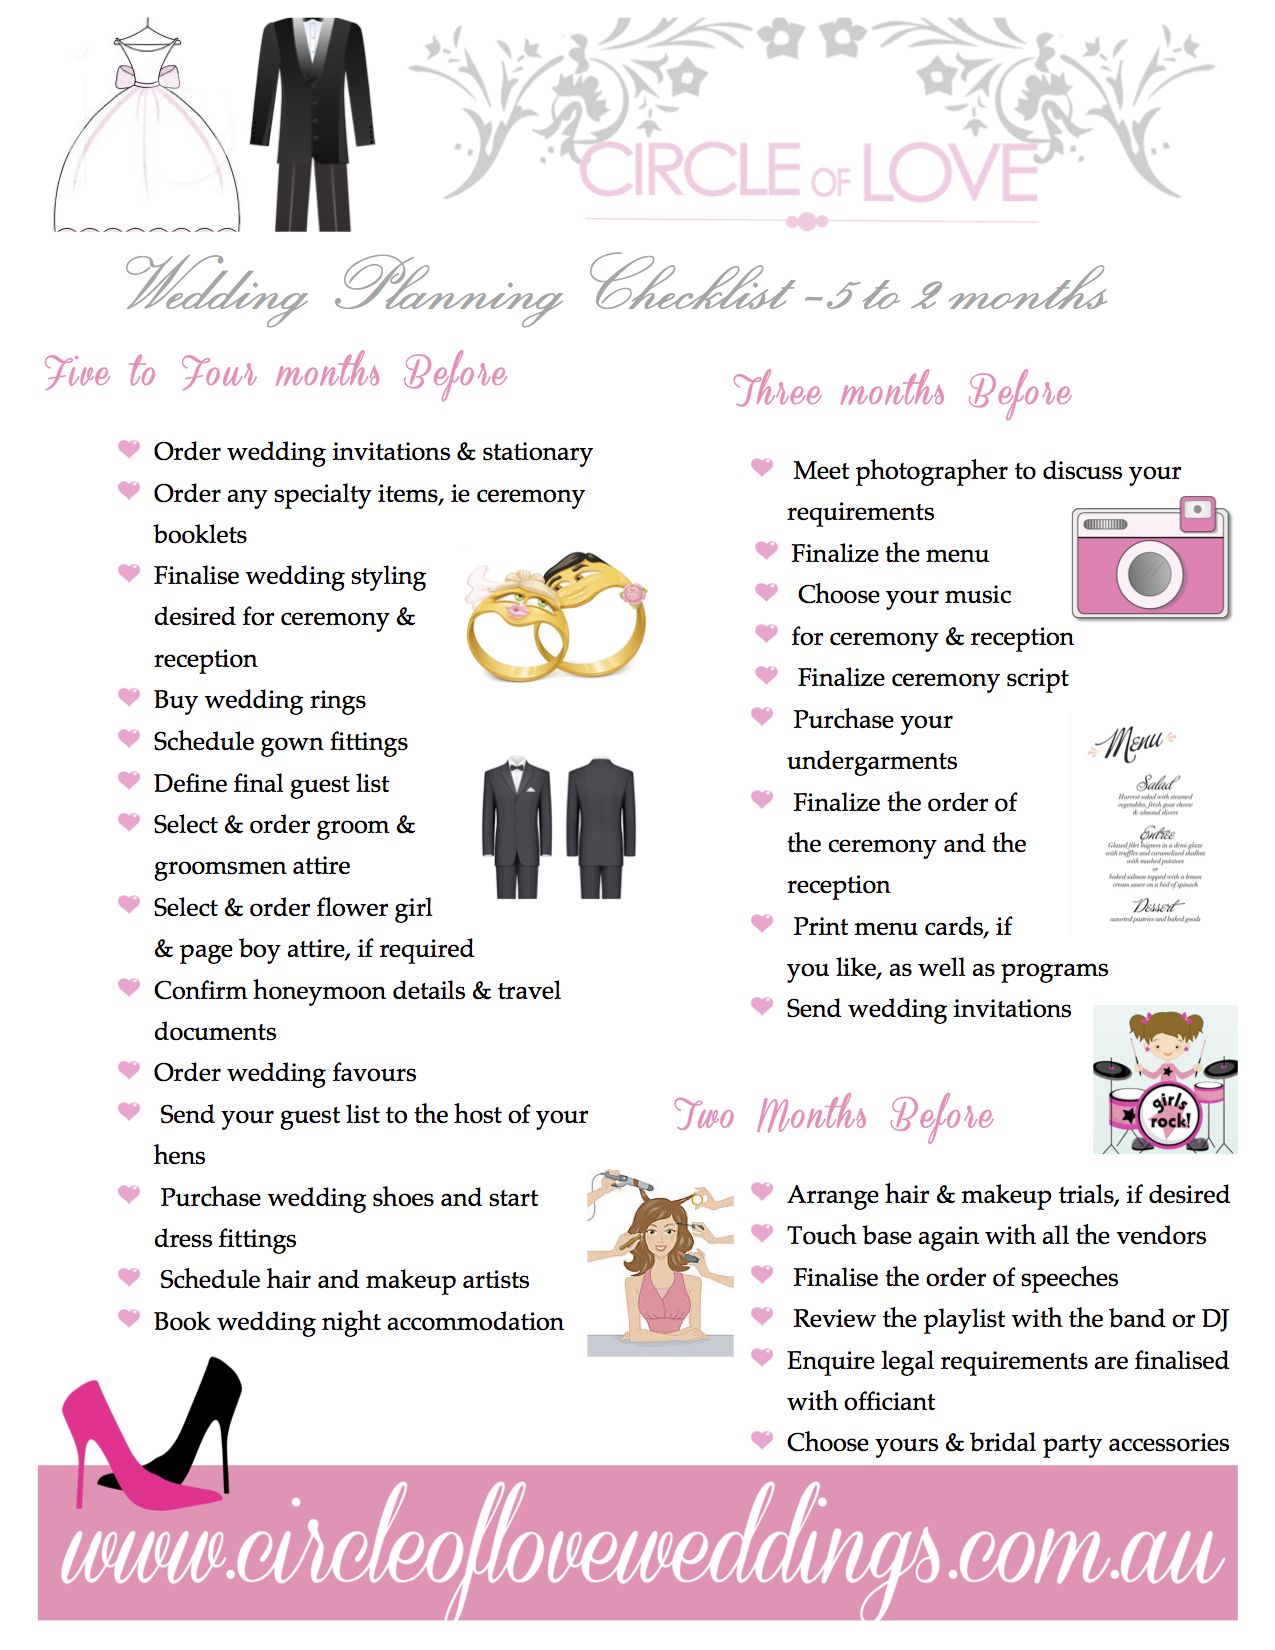 2) Wedding Planning checklist 5 months before before ...